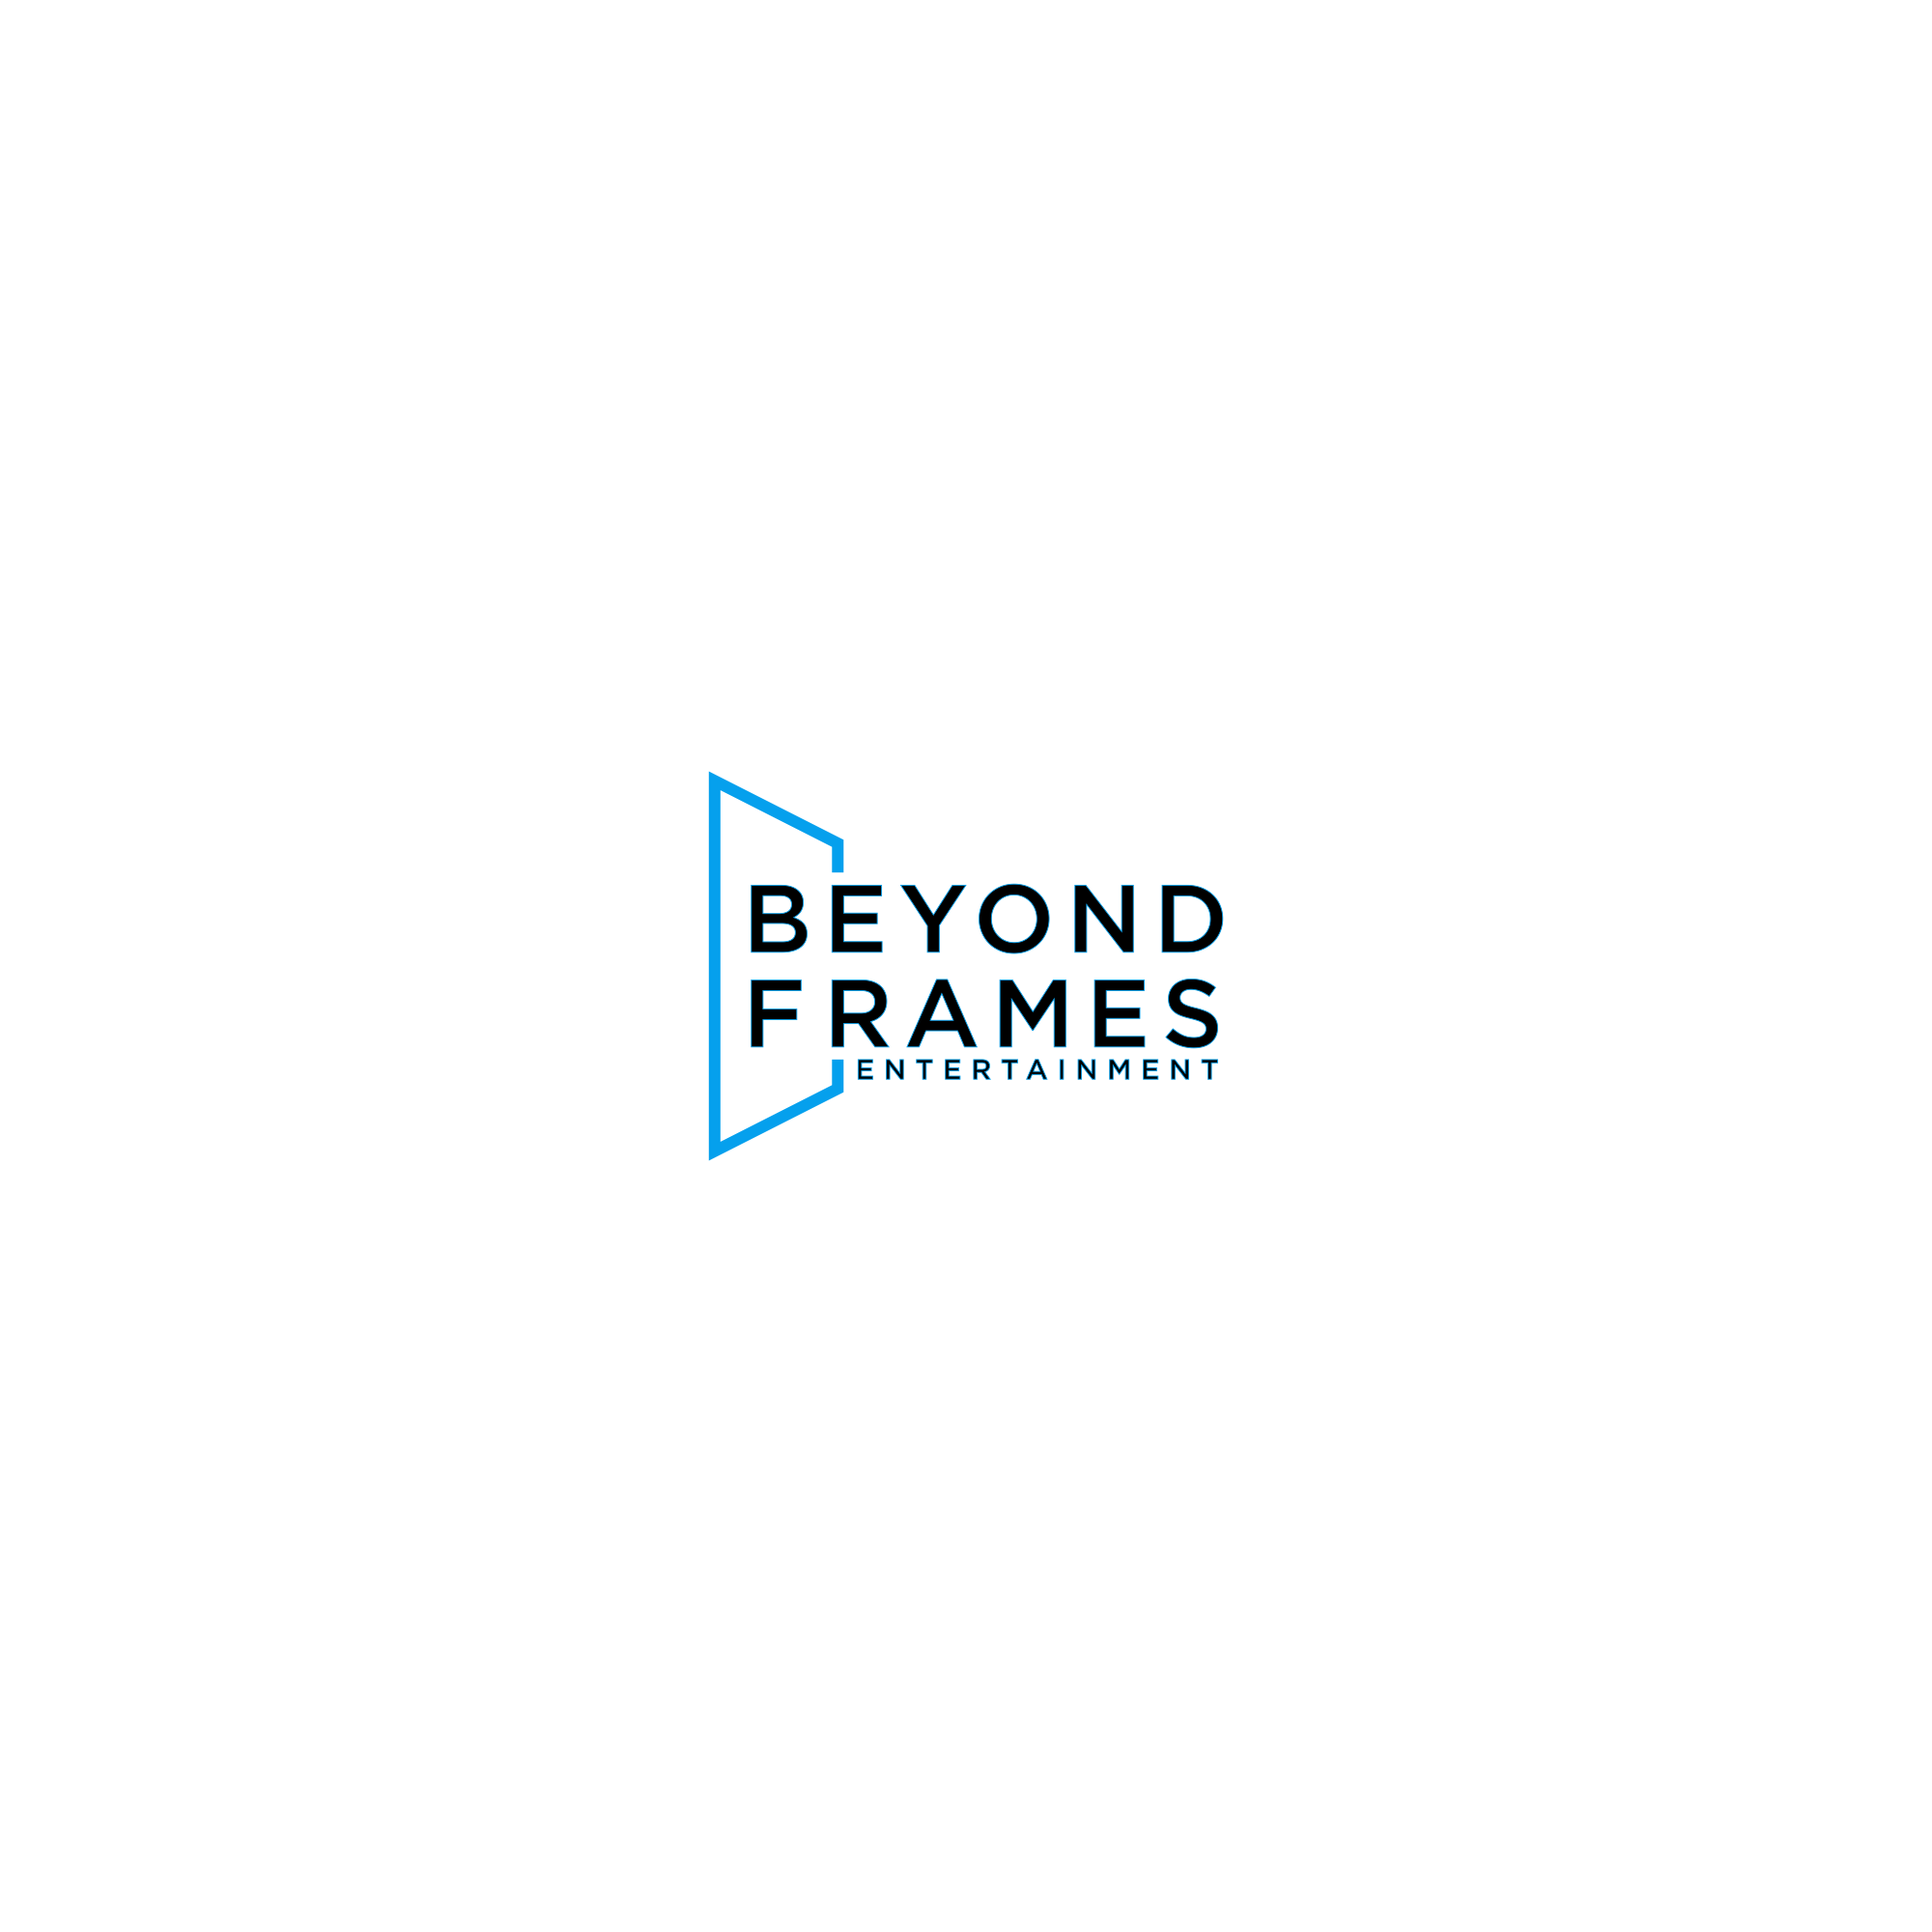 Beyond Frames Entertainment AB Logo